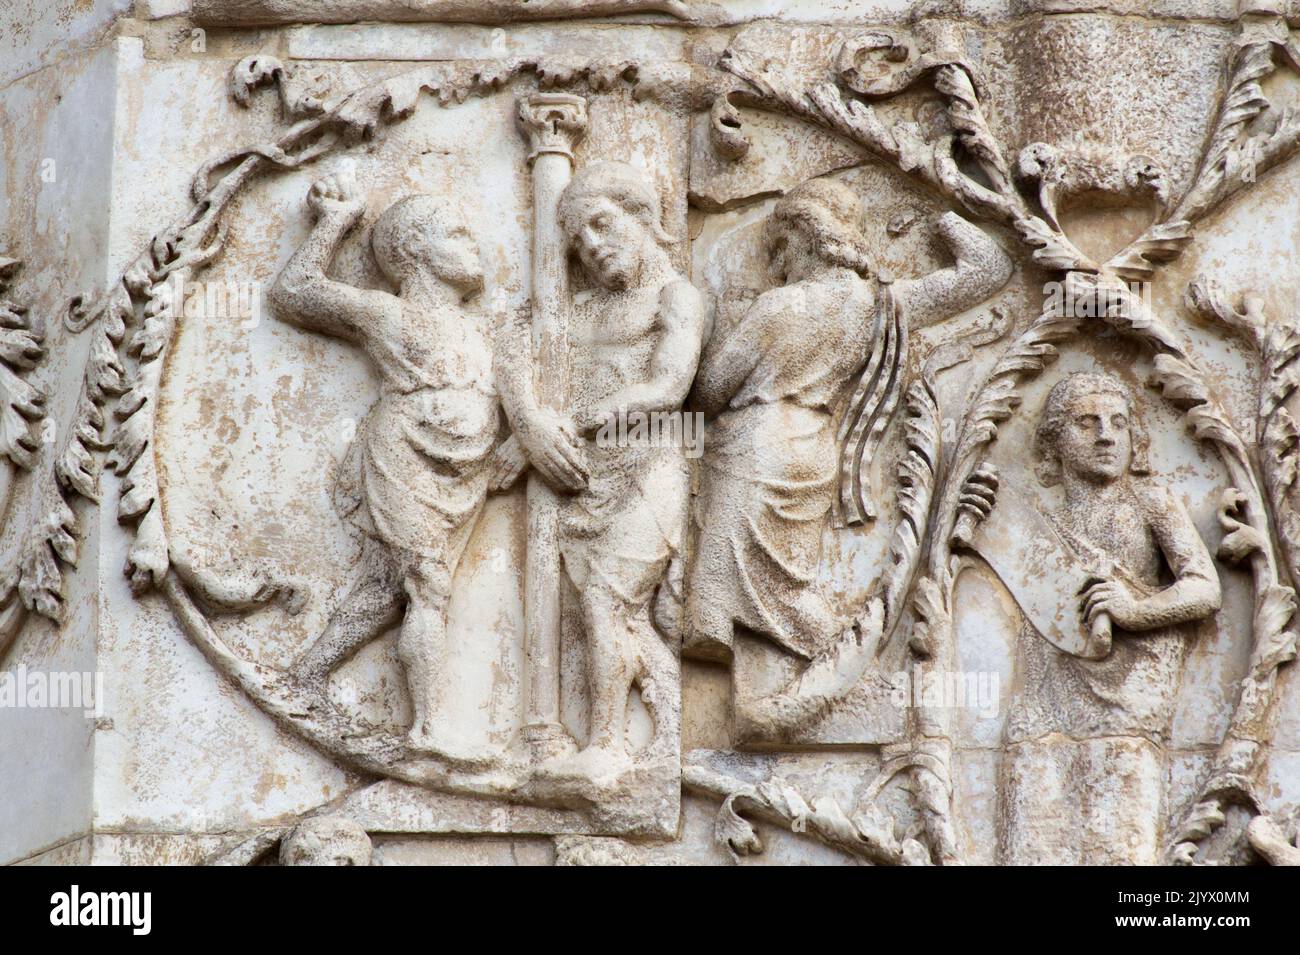 La Passione: La Flagellazione di Cristo alla colonna - bassorilievo dal 3th° pilastro (nuovo Testamento) - facciata della cattedrale di Orvieto - Umbria - Italia Foto Stock